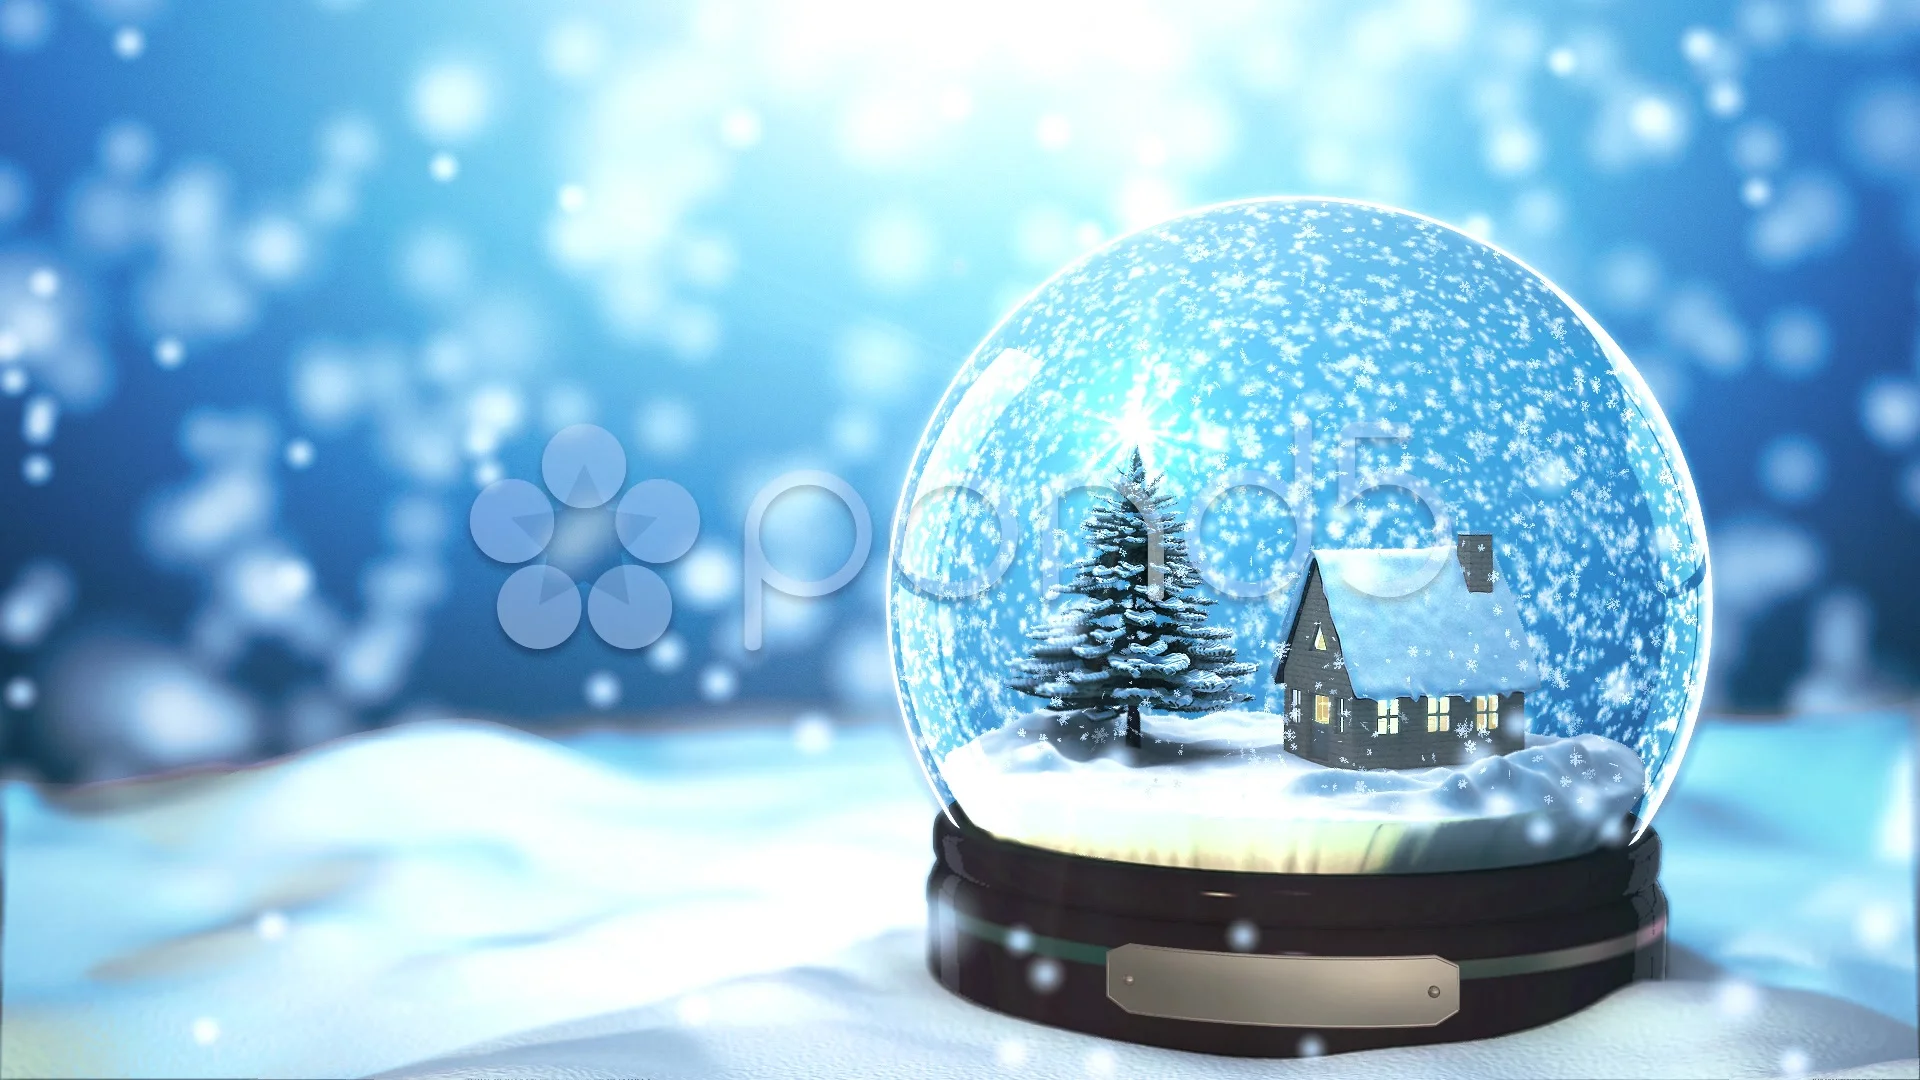 Video nền cầu tuyết Giáng sinh sẽ khiến bạn say đắm và thích thú. Những hình ảnh tuyết trắng rơi nhẹ nhàng và không khí Giáng sinh đang ập tới sẽ mang đến cho bạn trải nghiệm mới lạ và đáng nhớ. Hãy tận hưởng thời gian này cùng những người thân yêu của mình.